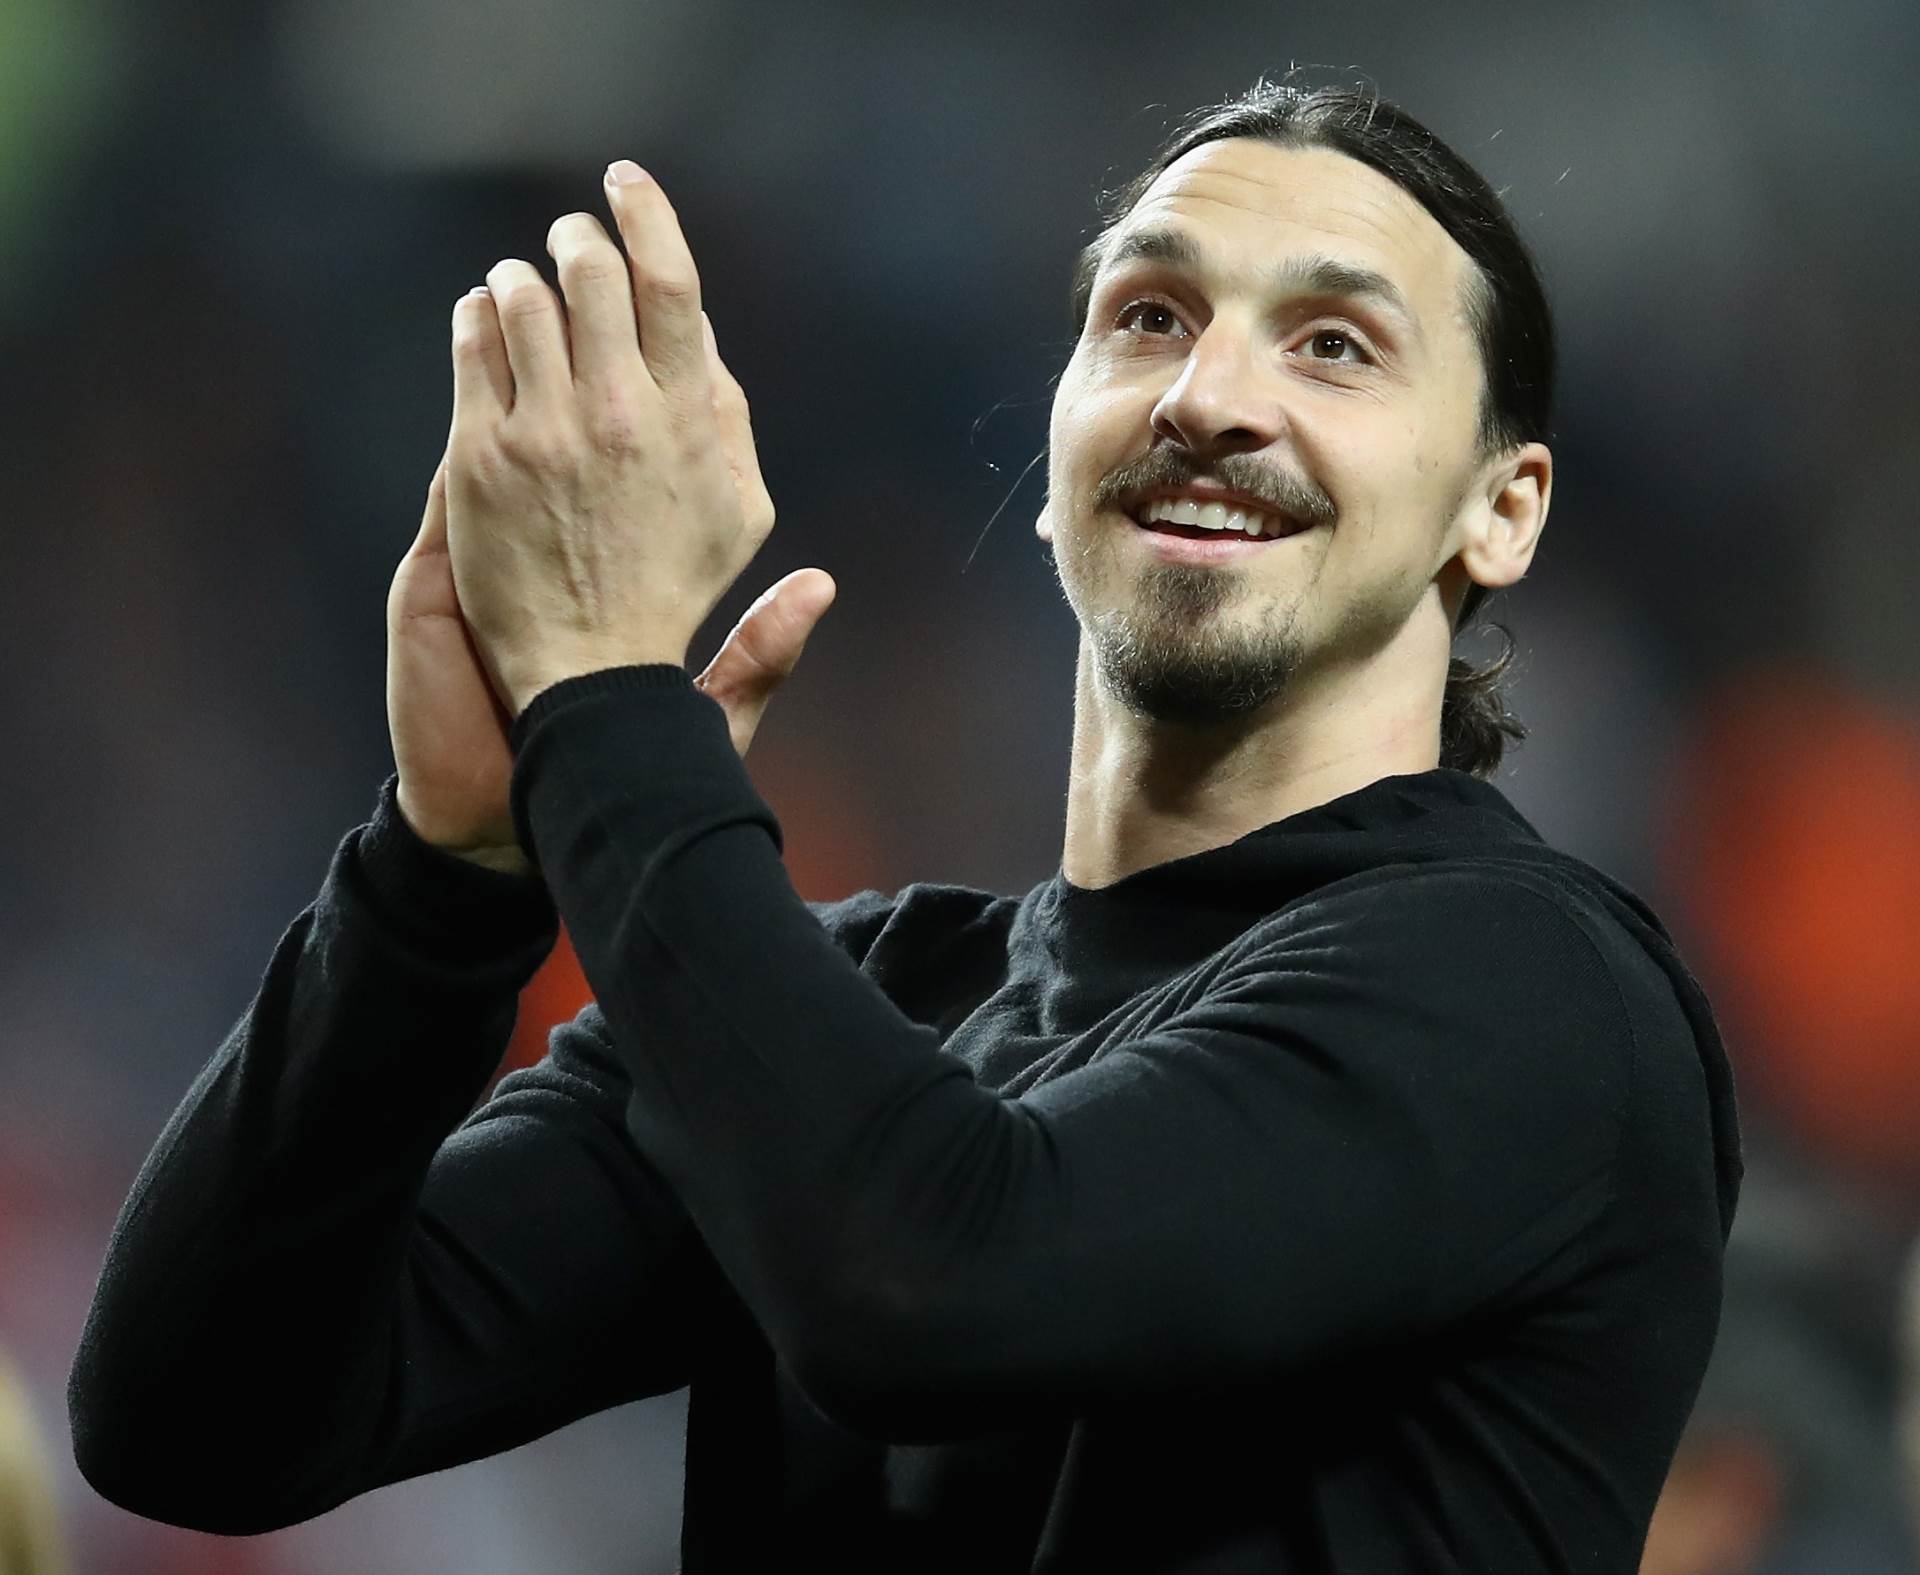  ZVANIČNO: Zlatan Ibrahimović potpisao ugovor sa AC Milan 